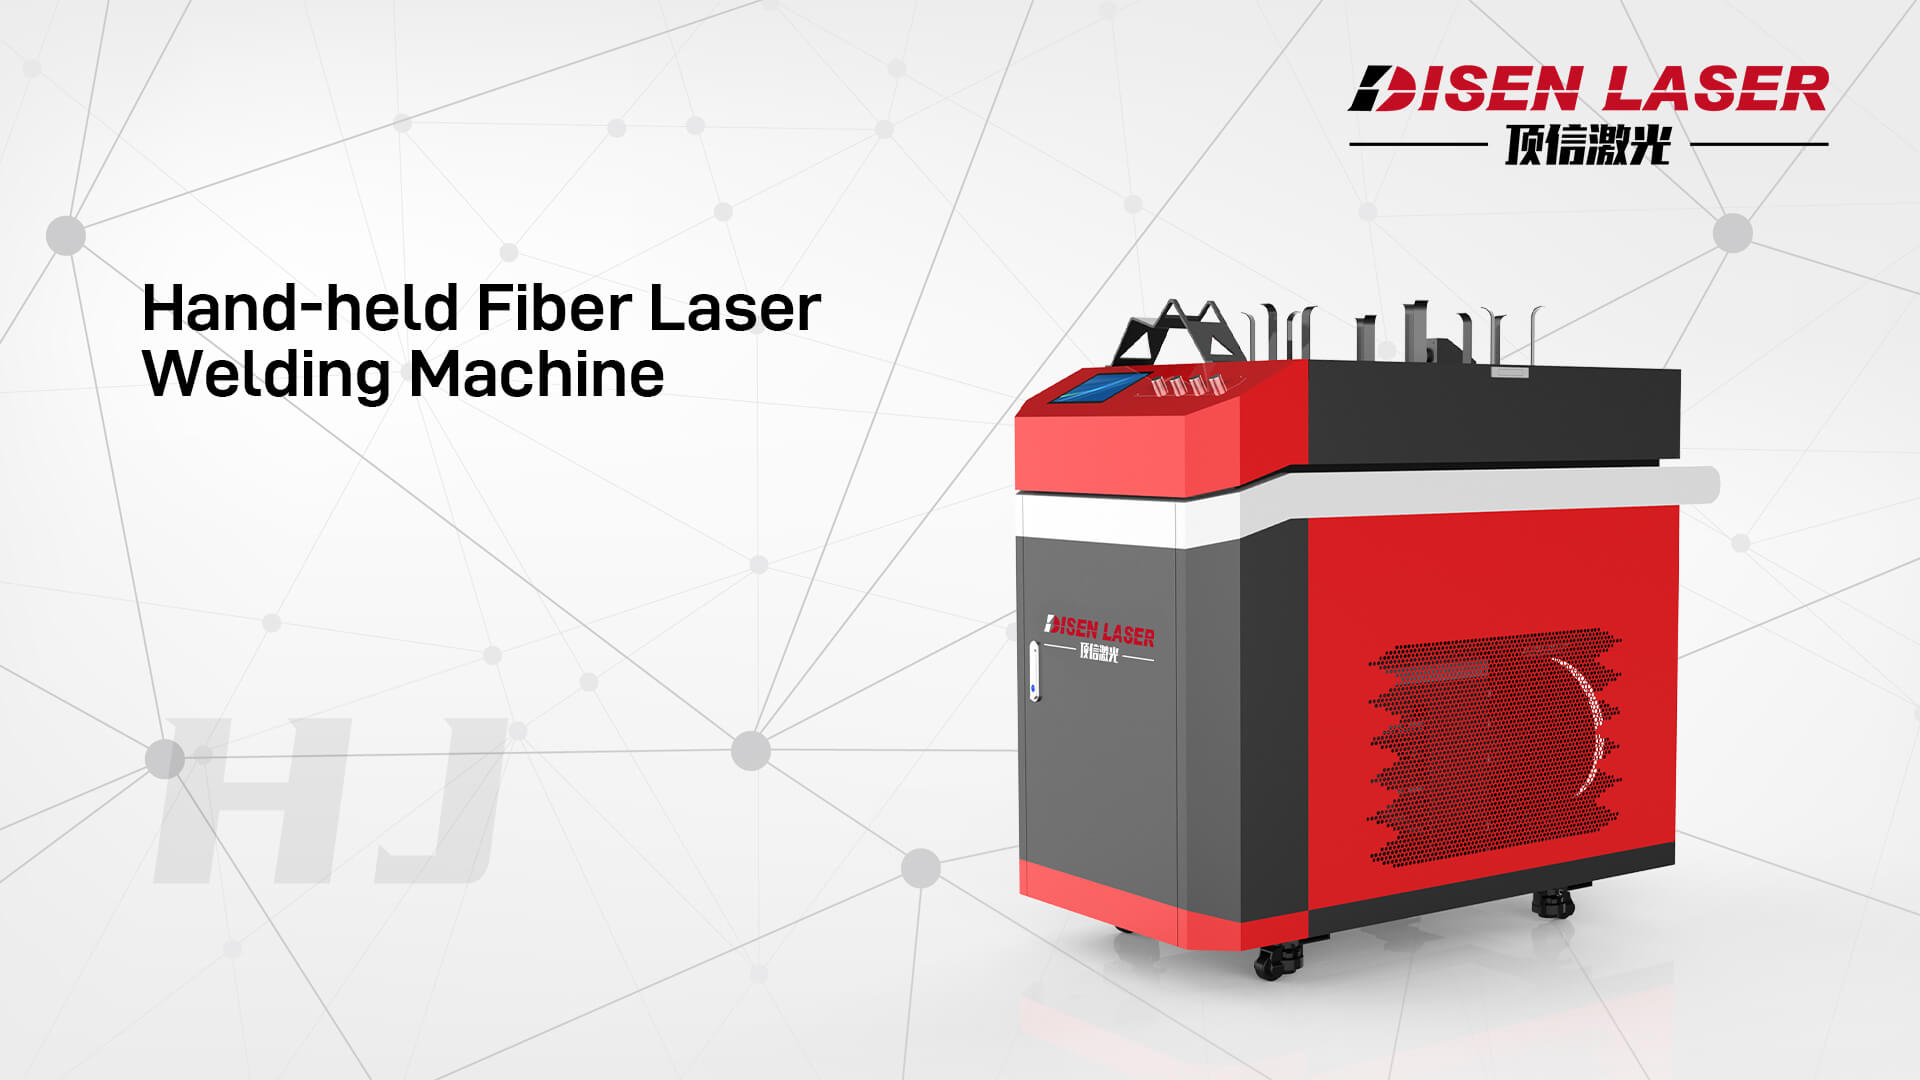 Hand-held Fiber Laser Welding Machine.jpg